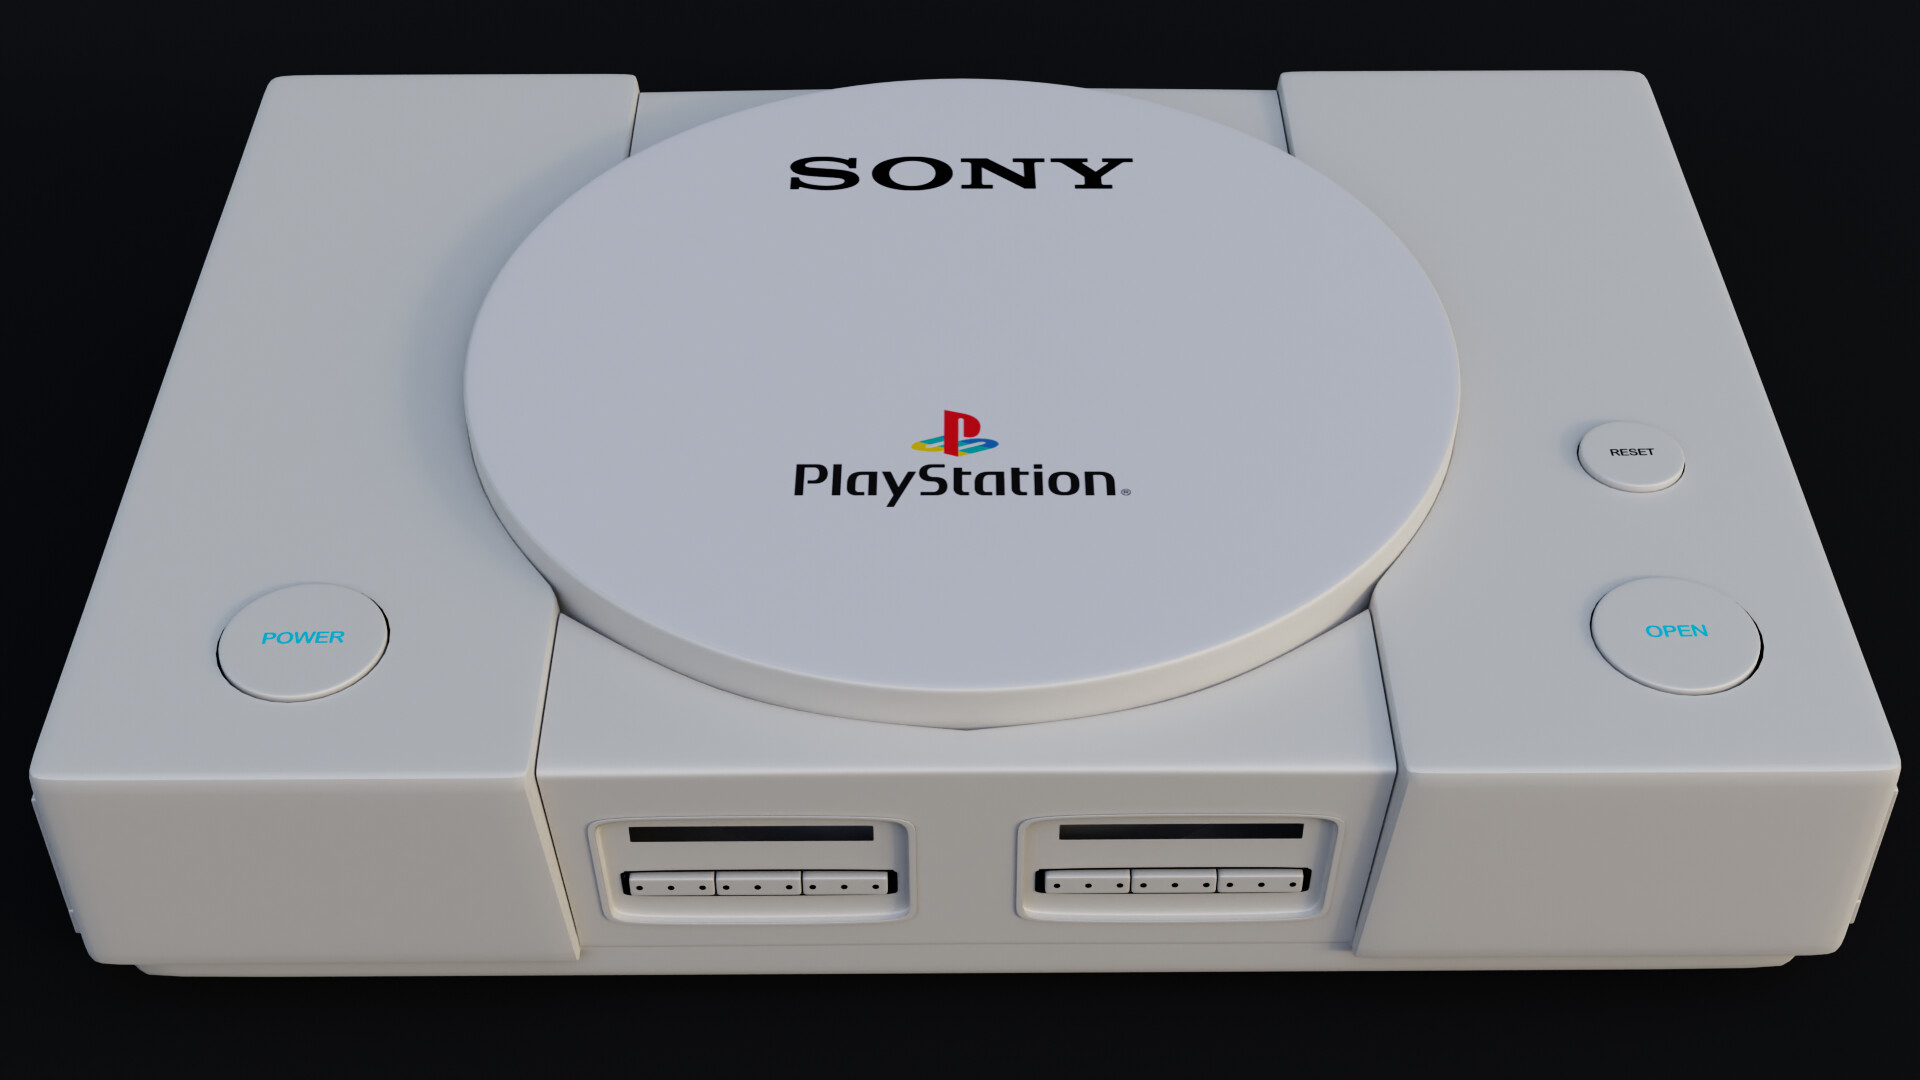 ArtStation - PlayStation 1 model